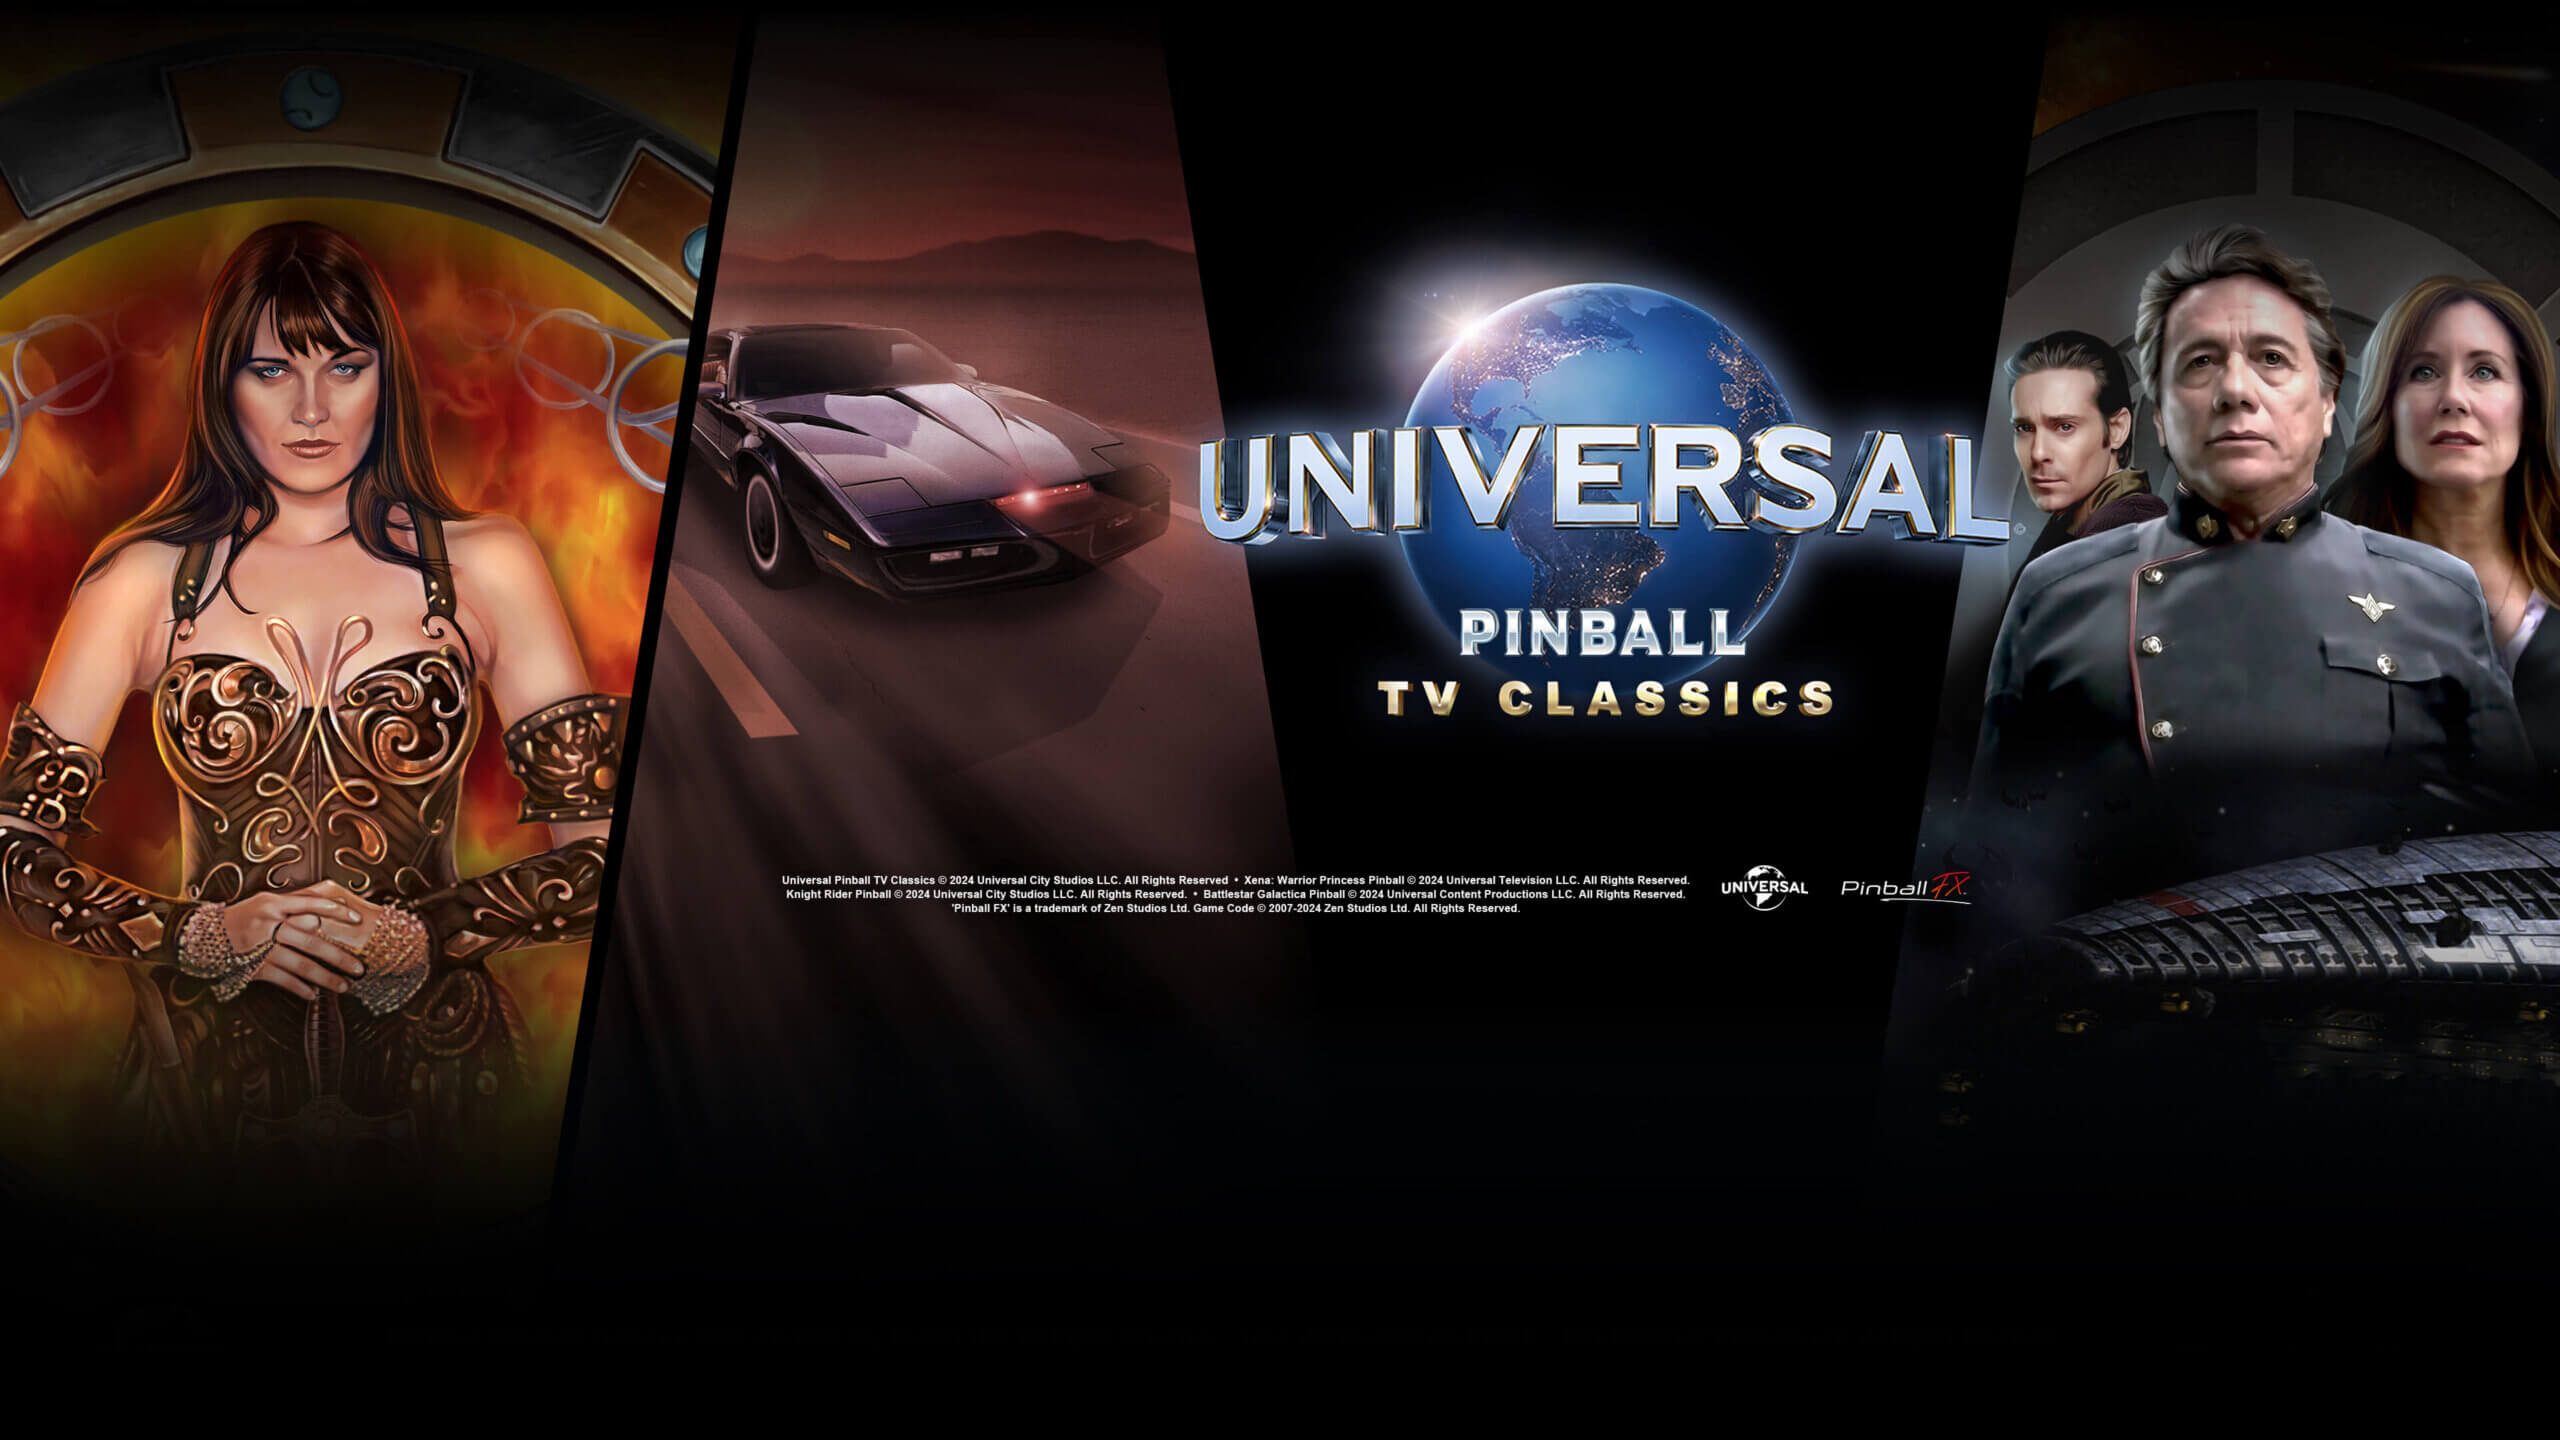 Universal Pinball: TV Classics